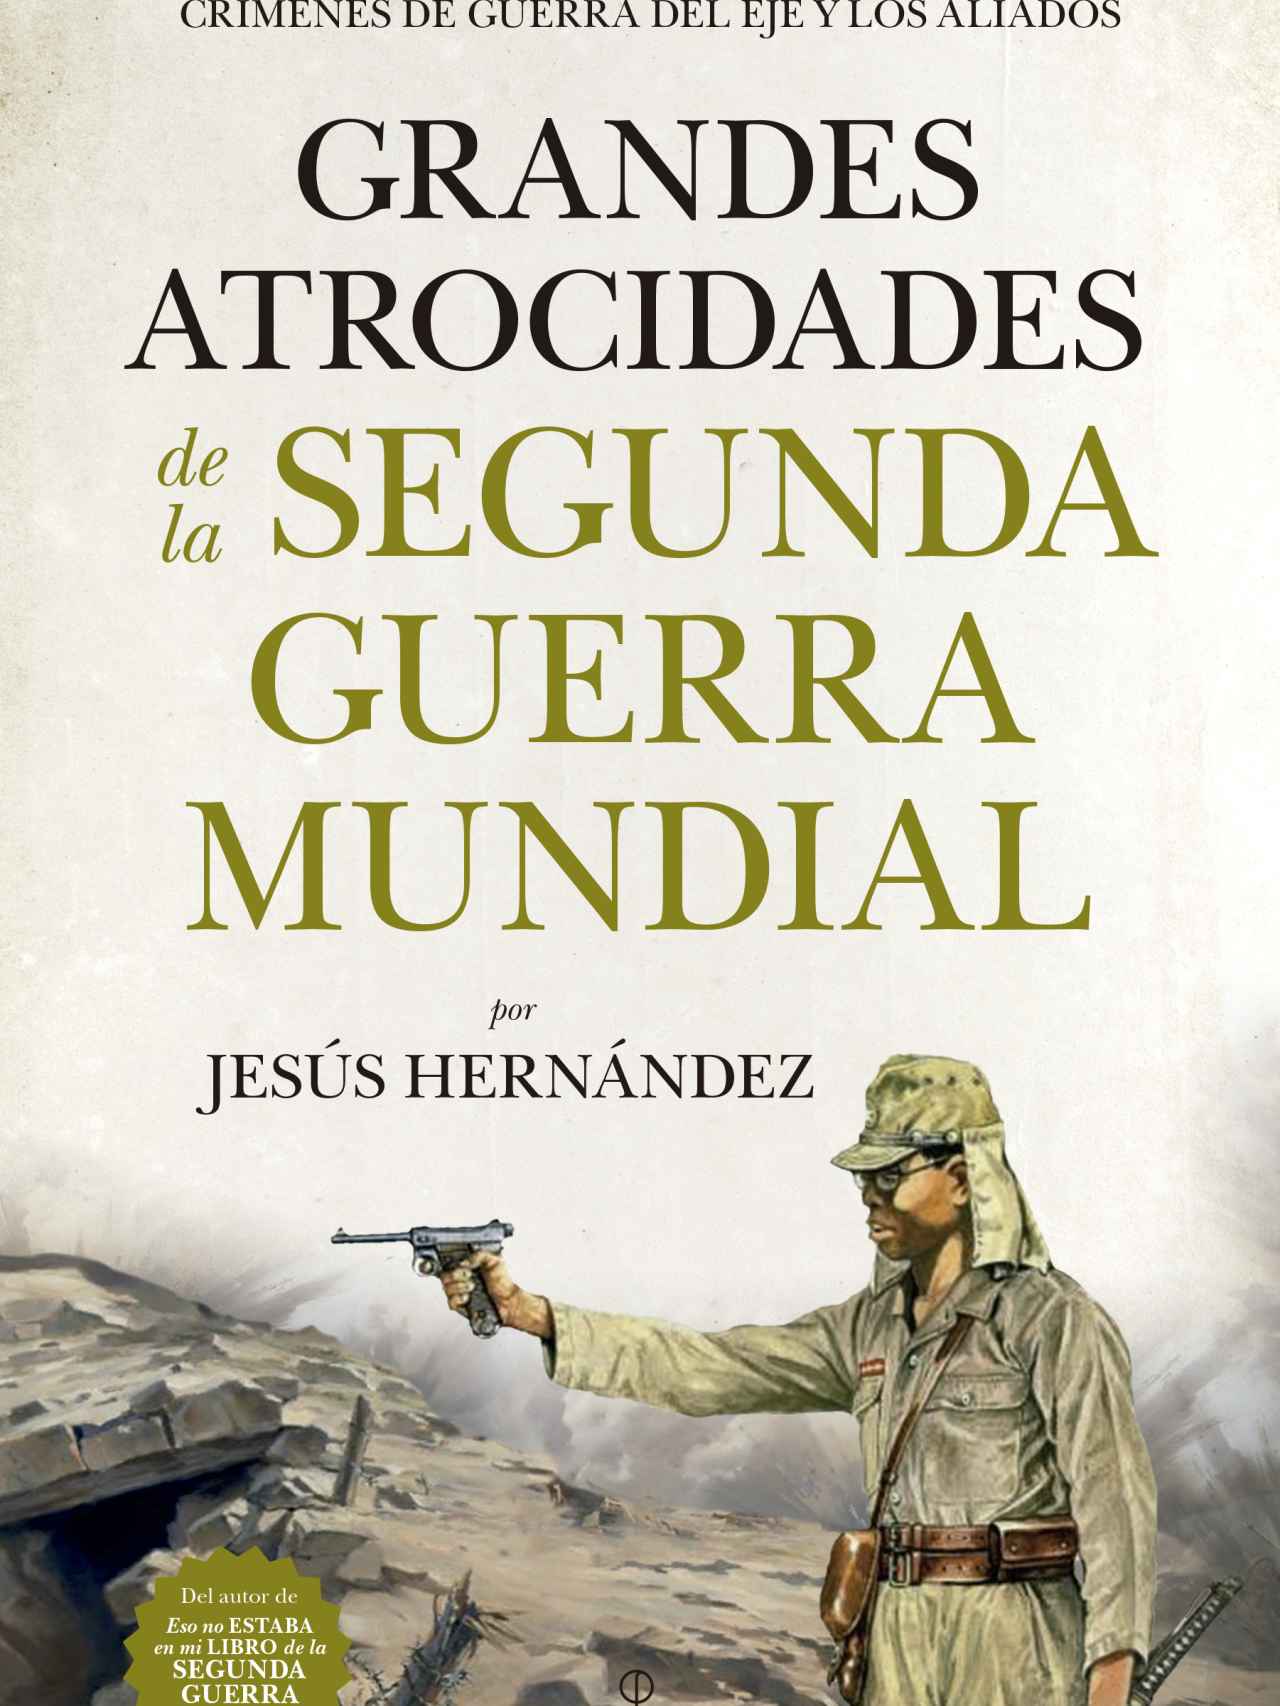 Portada del libro de Jesús Hernández.